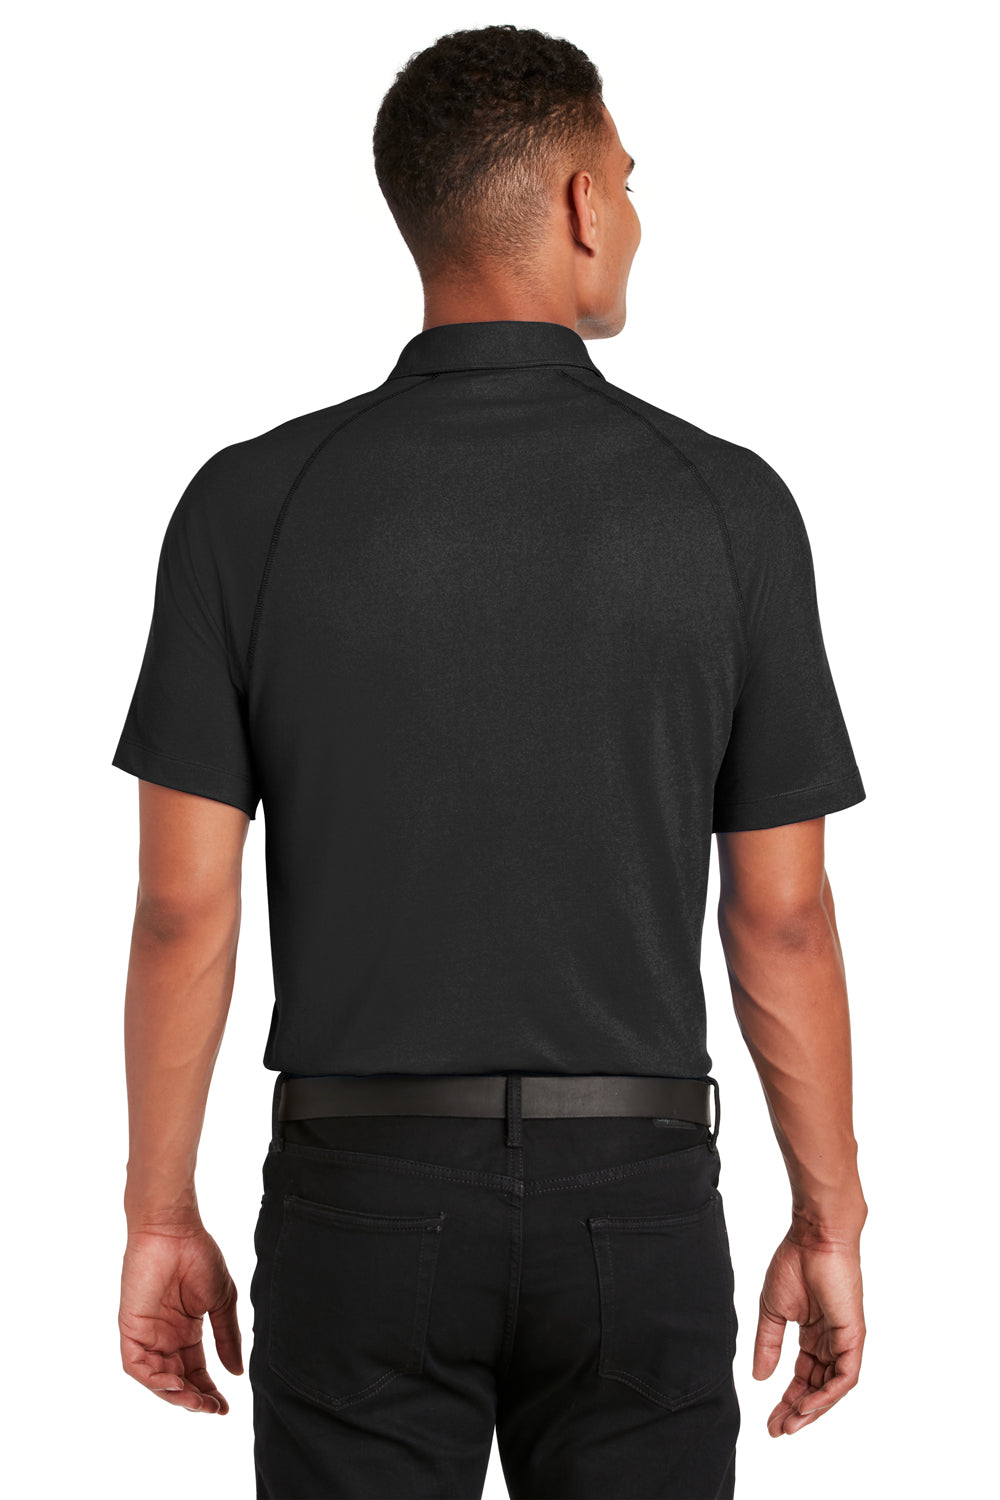 Ogio OG126 Mens Onyx Moisture Wicking Short Sleeve Polo Shirt Black Back